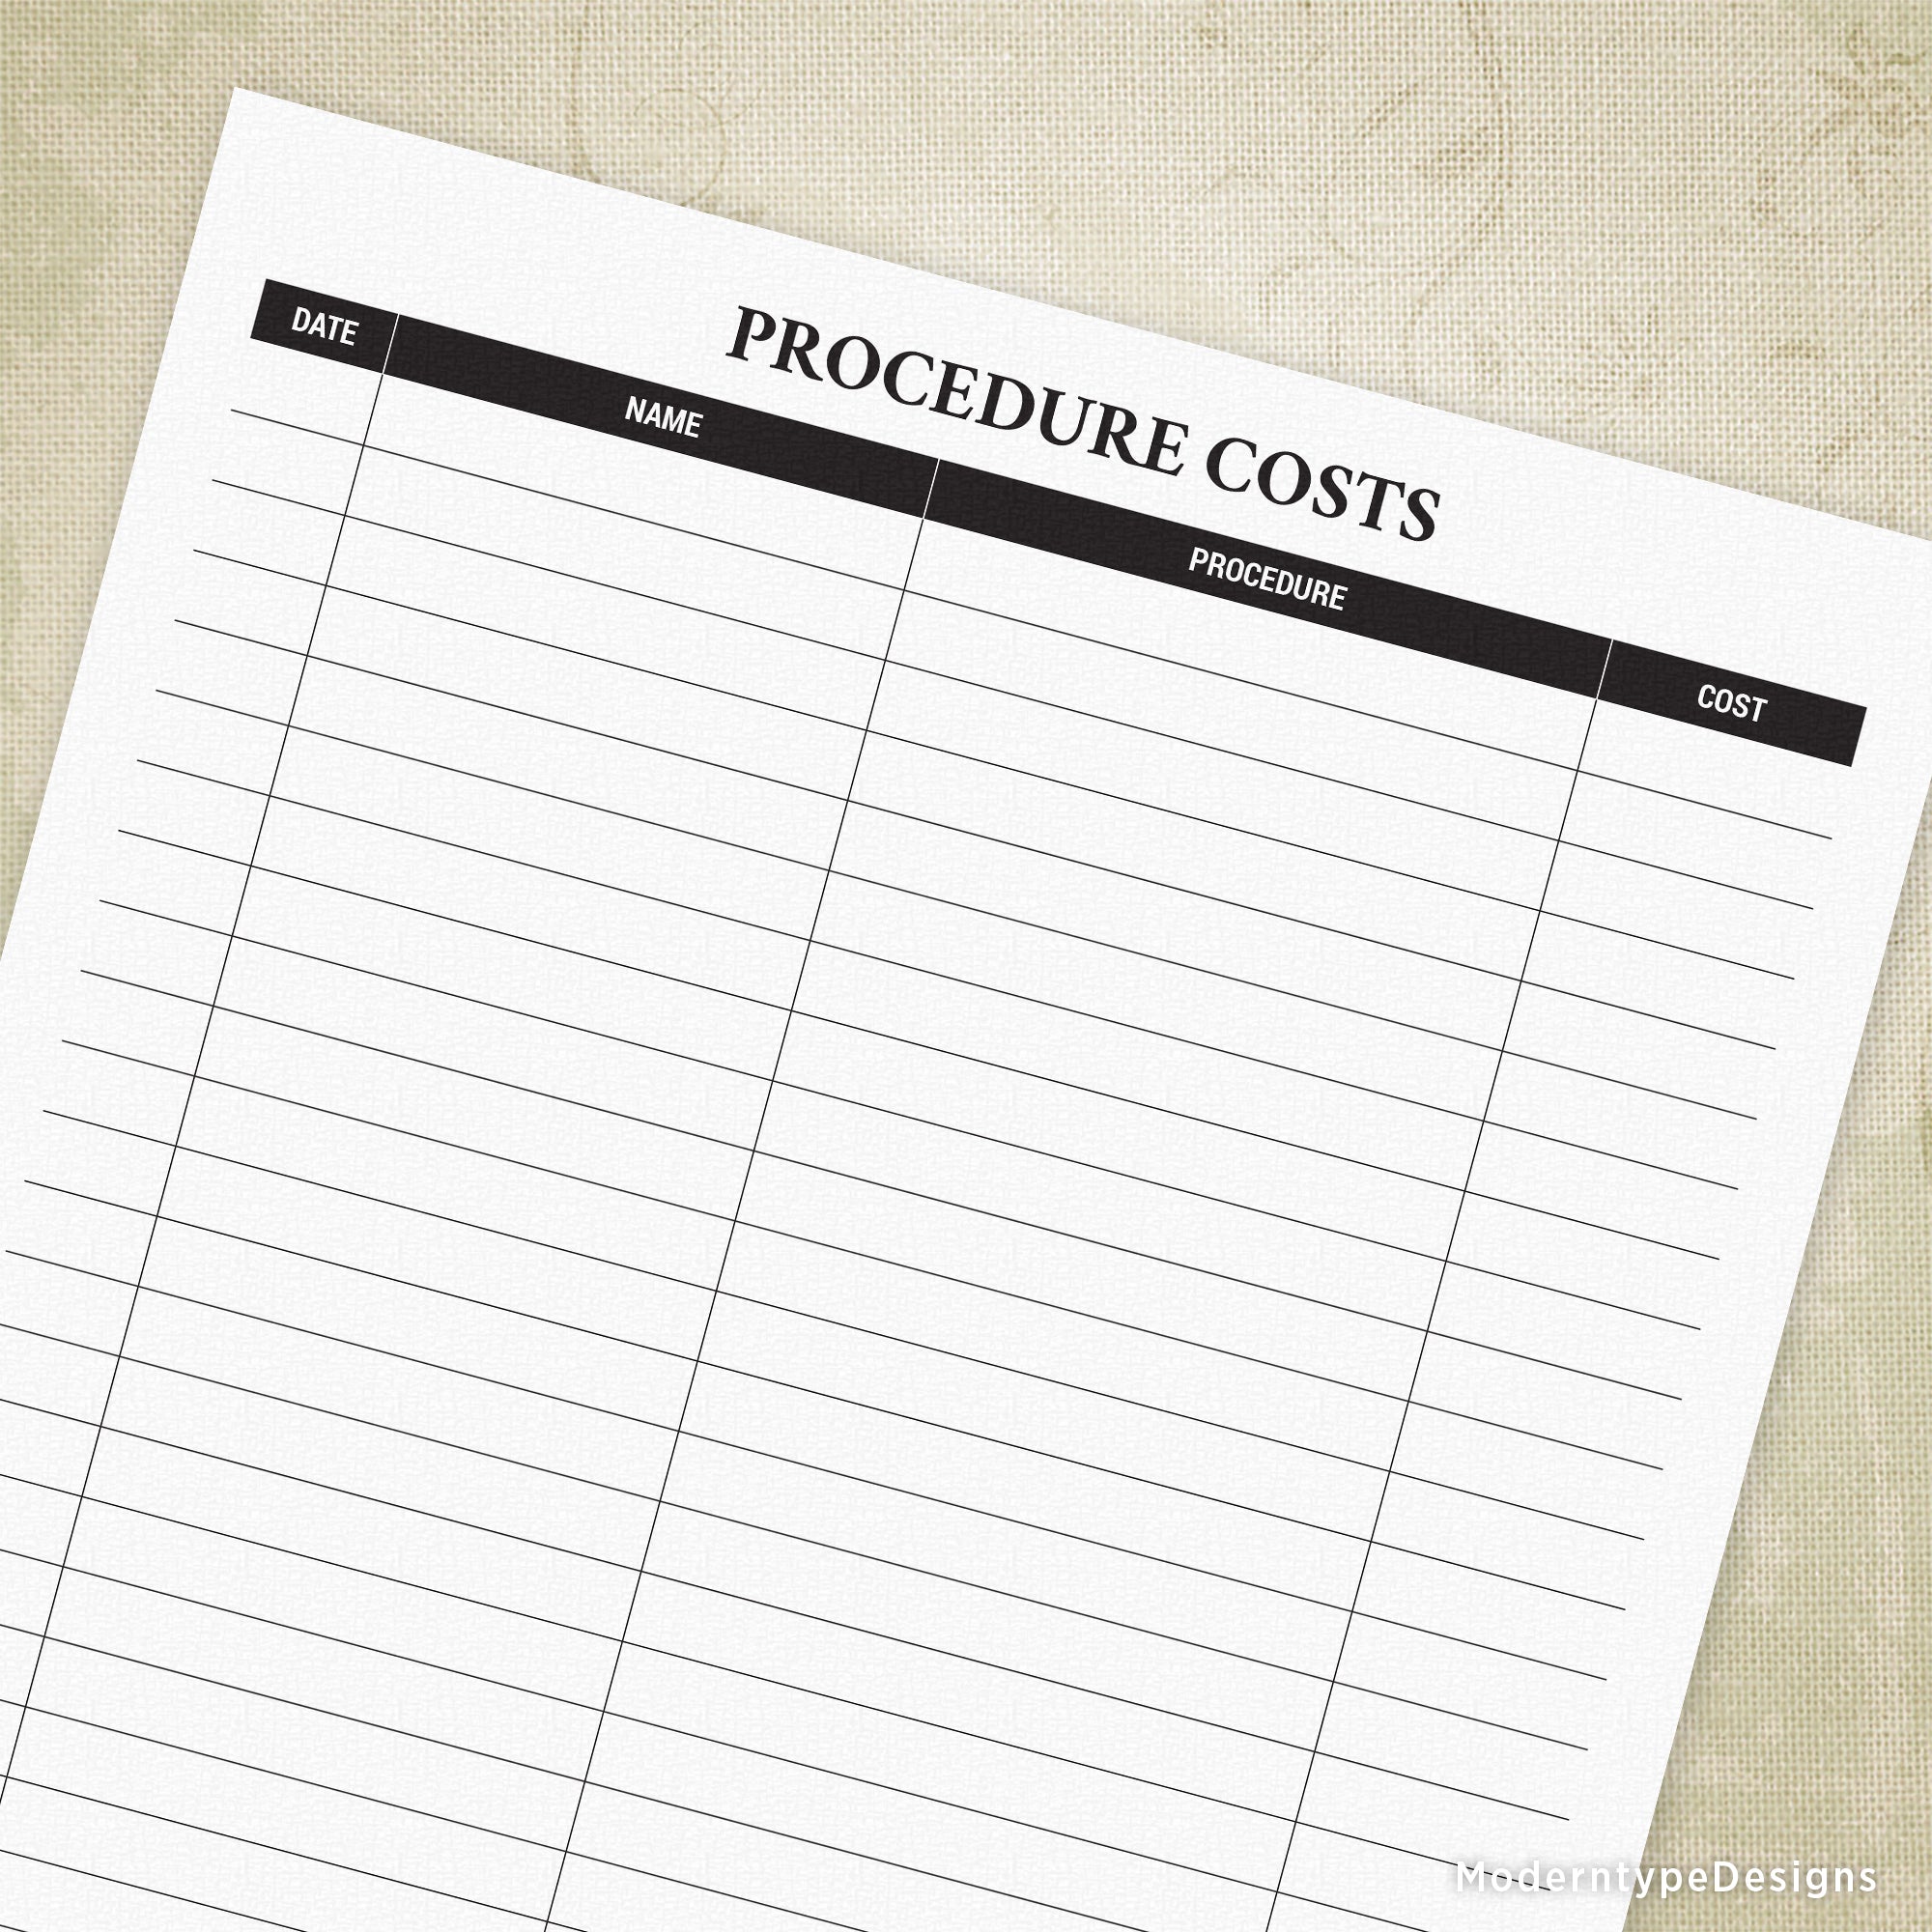 Procedure Costs Printable